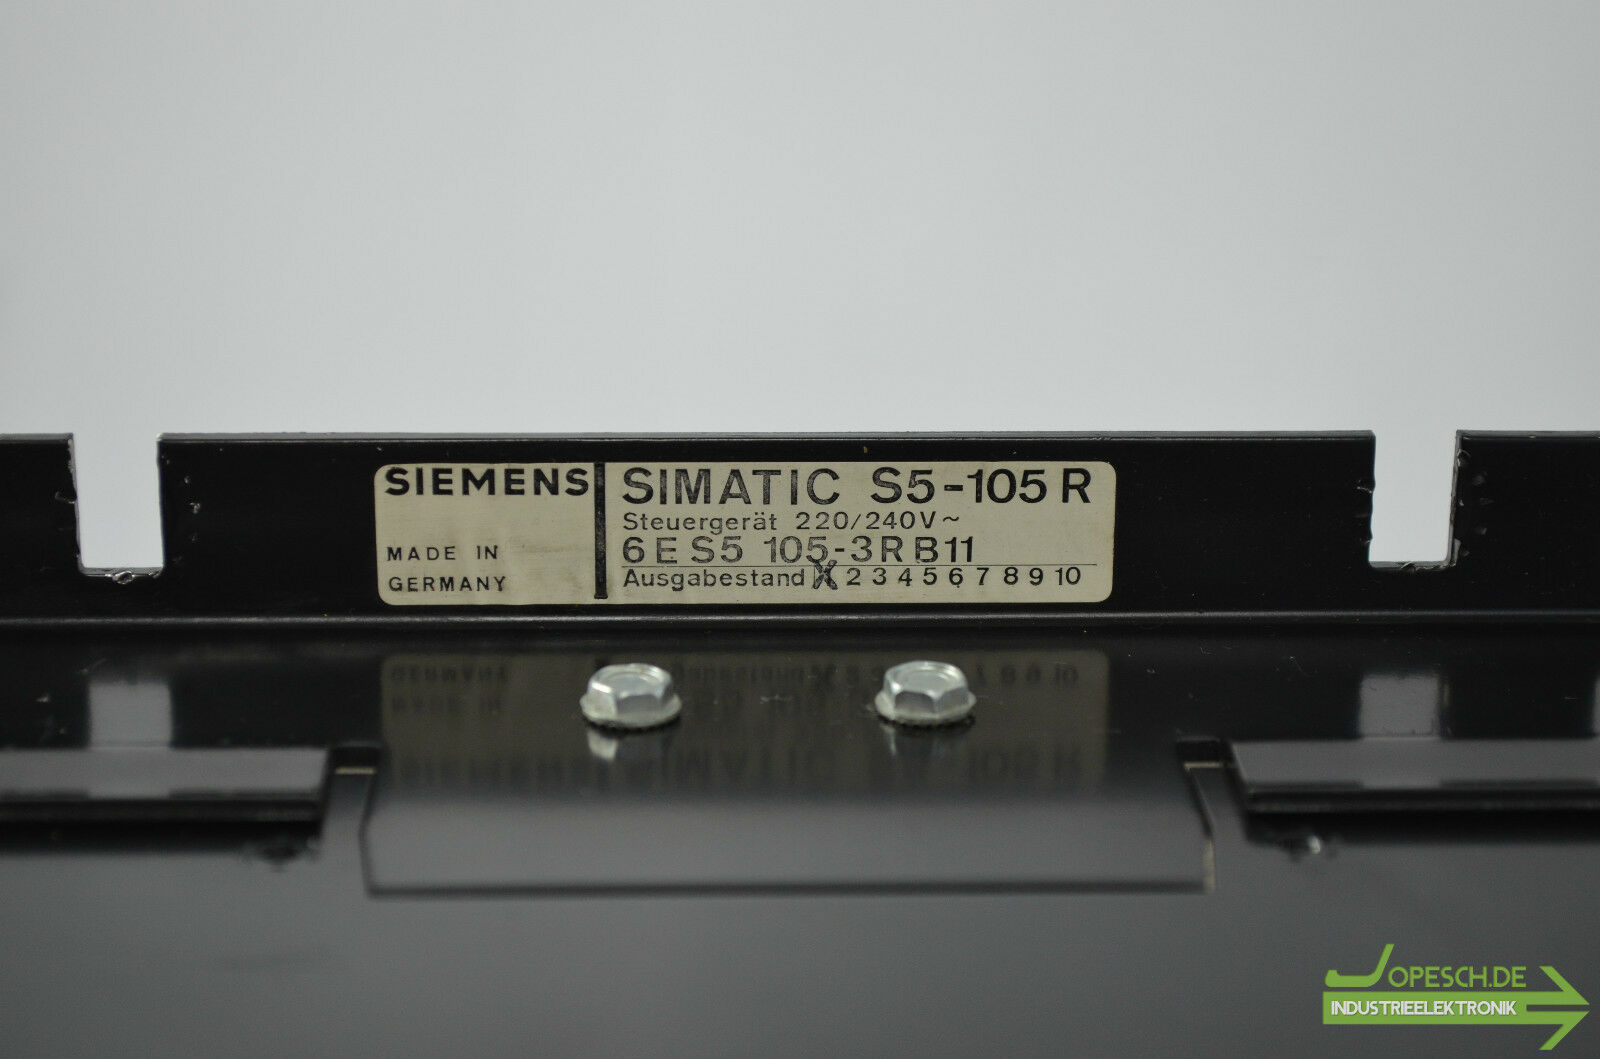 Siemens simatic S5-105 R 6ES5 105-3RB11 ( 6ES5105-3RB11 )